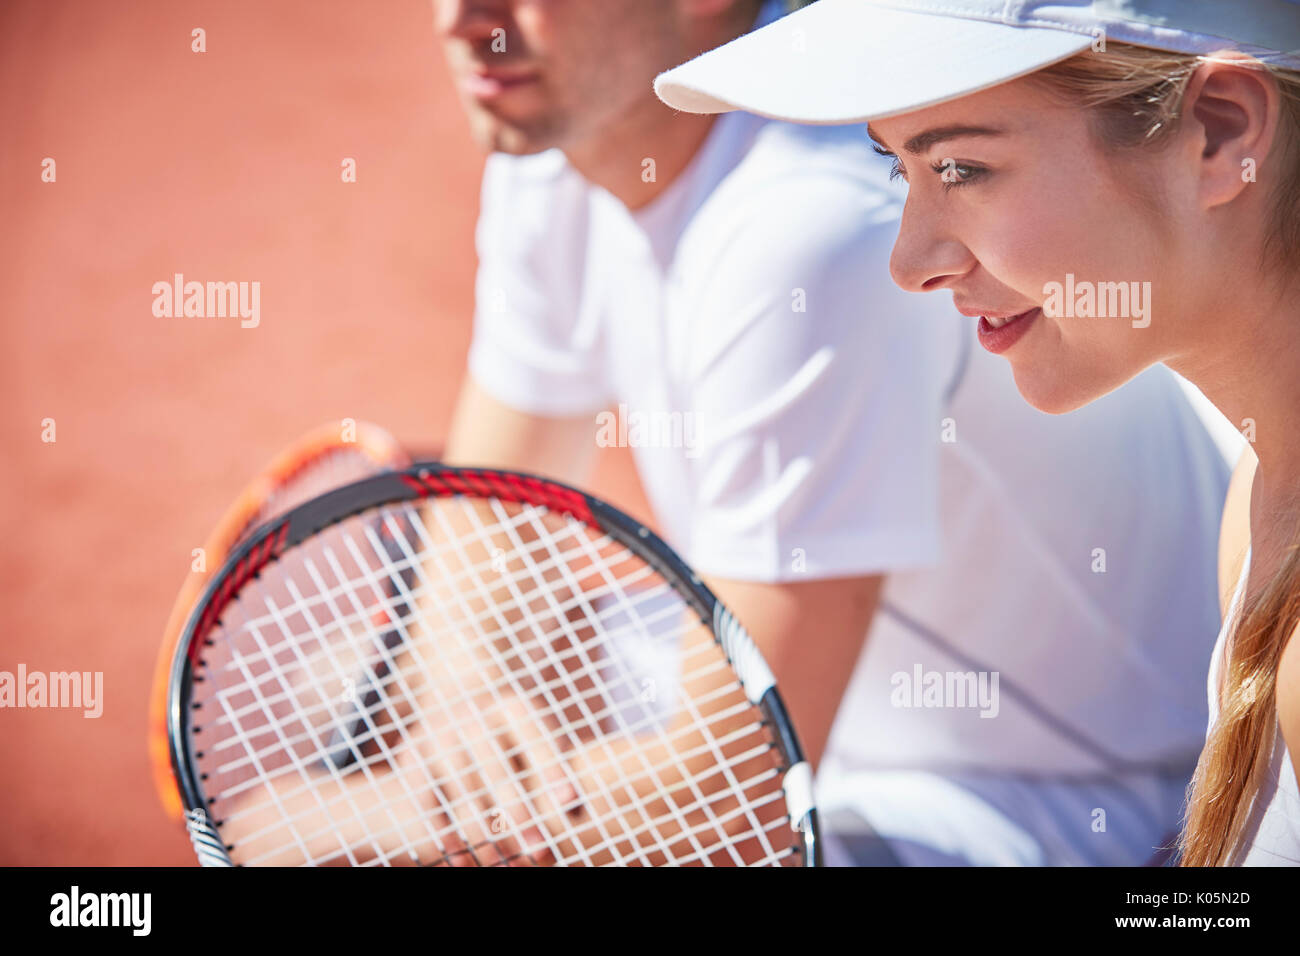 Lächelnd, selbstbewussten jungen Frau verdoppelt Tennis spielen, bereit, mit Tennisschläger Stockfoto